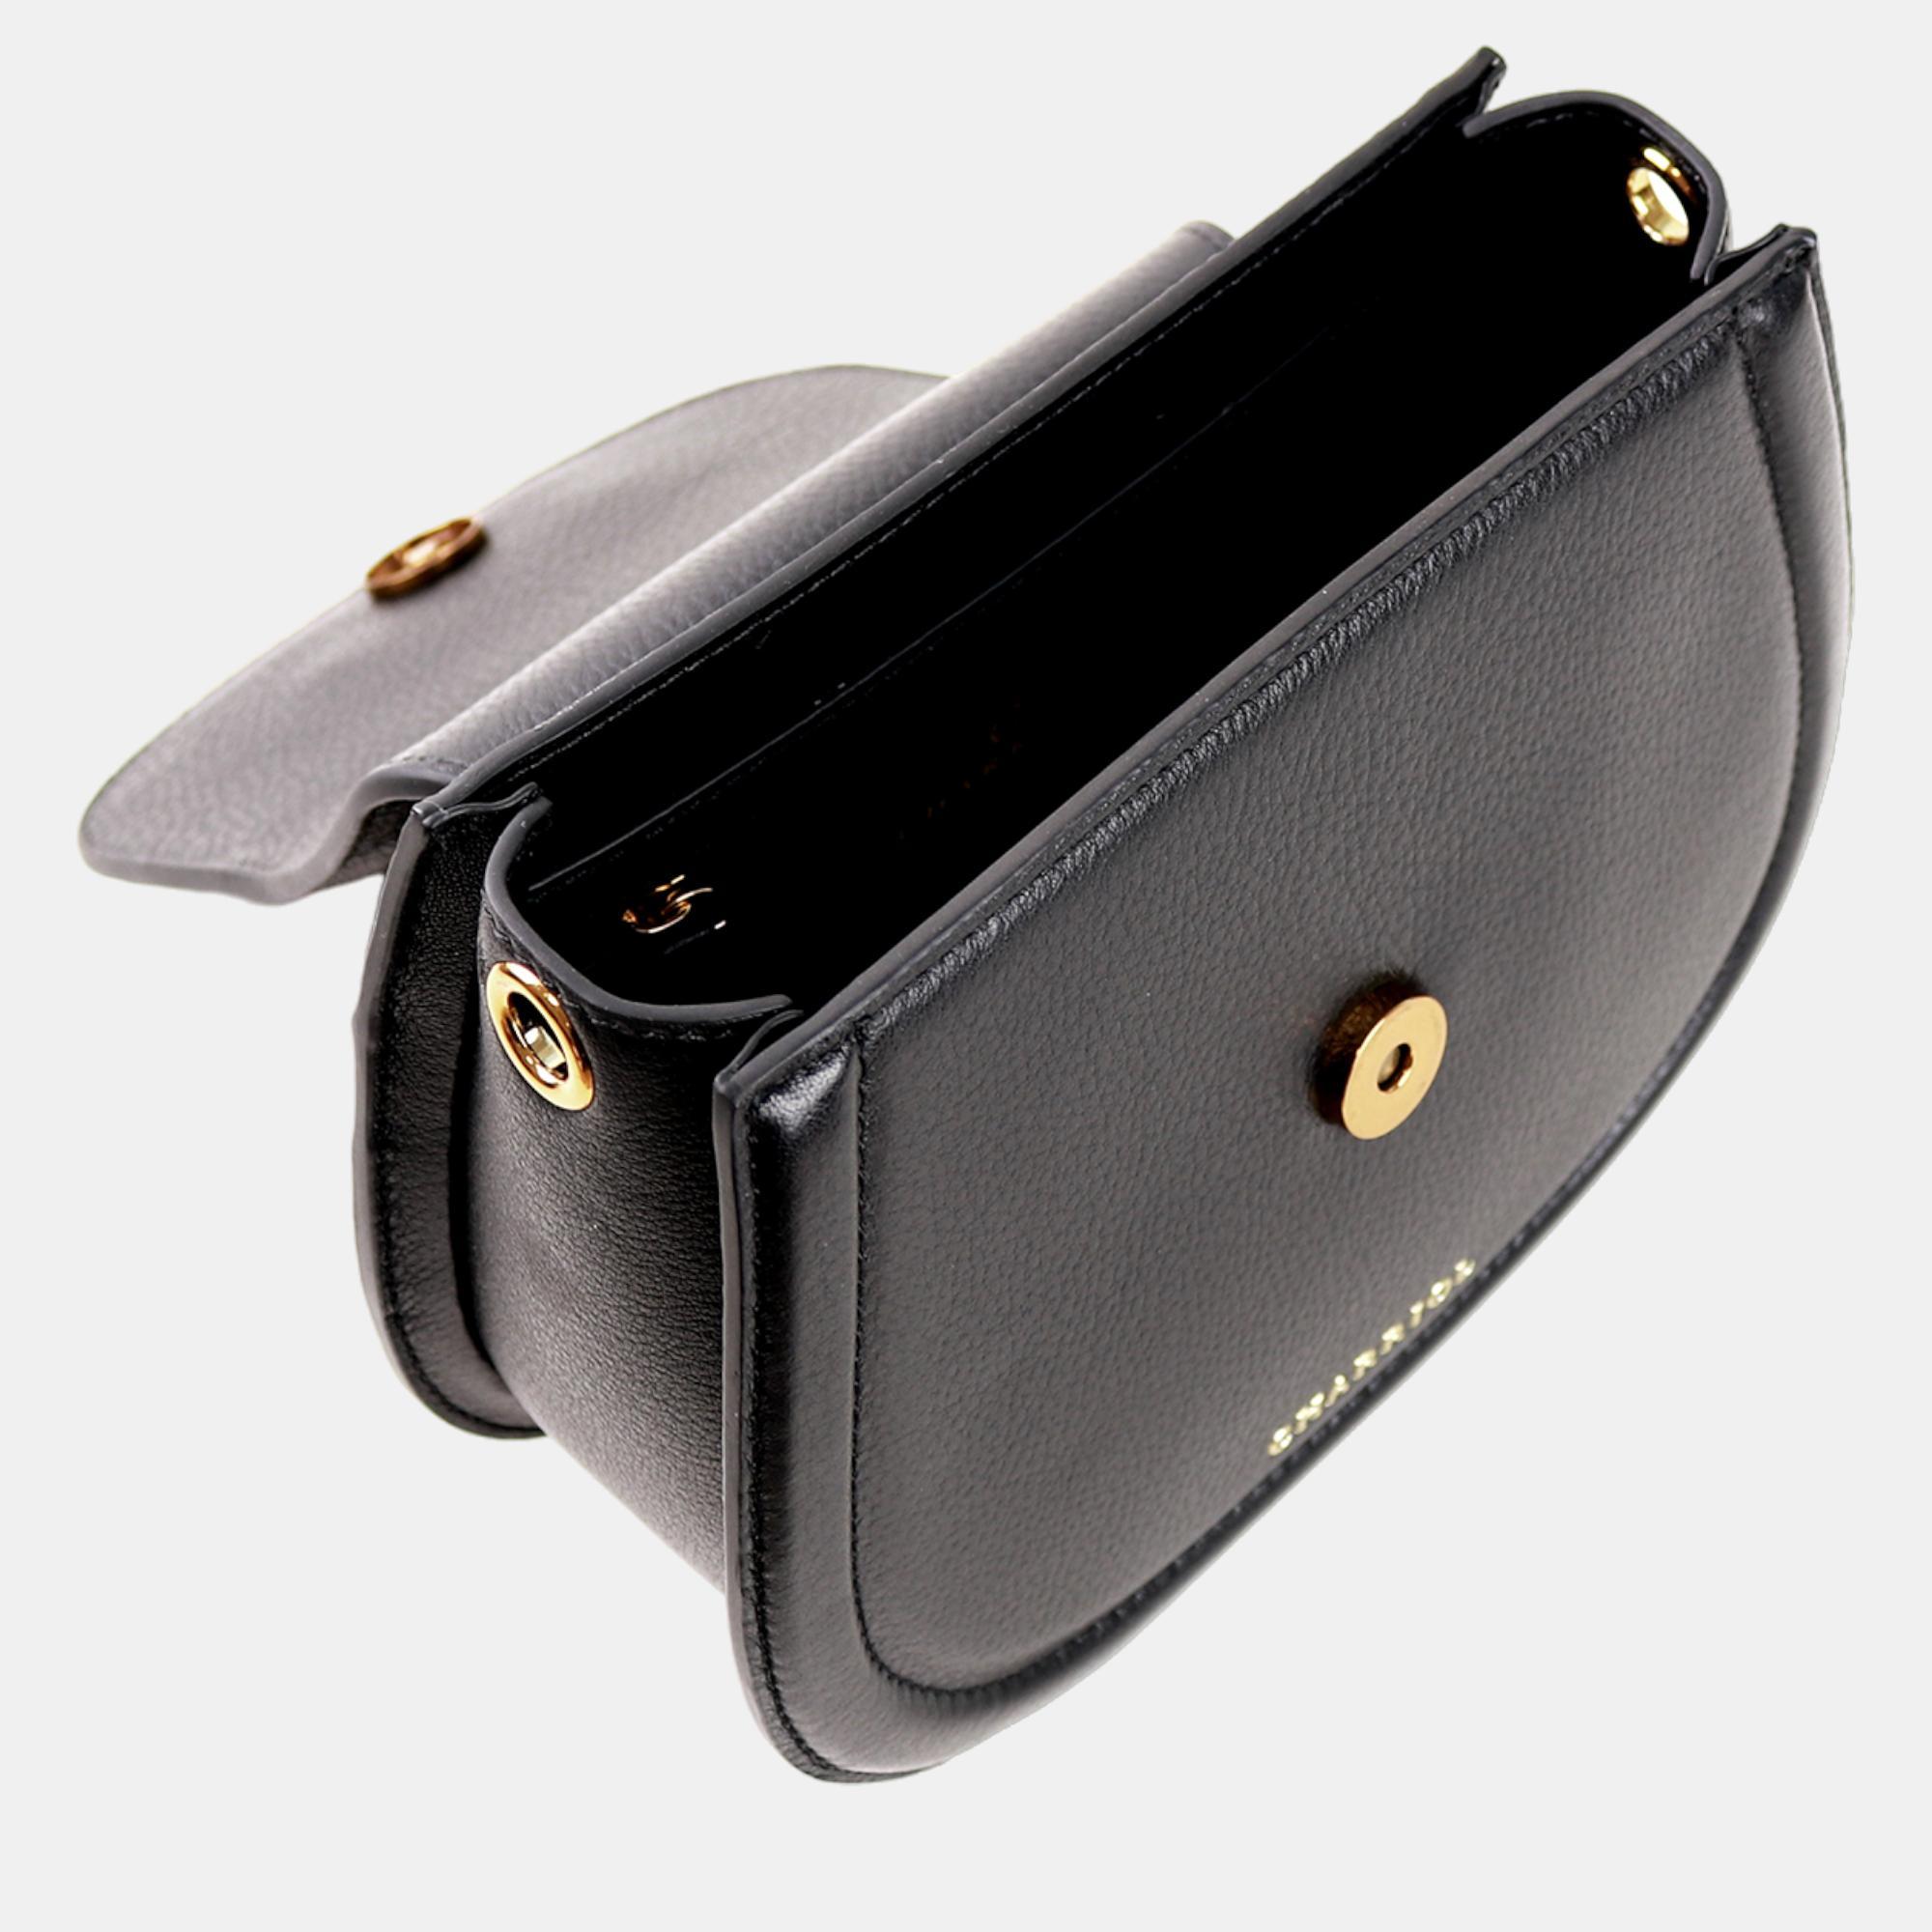 Charriol Black Leather MARIE OLGA Handbag